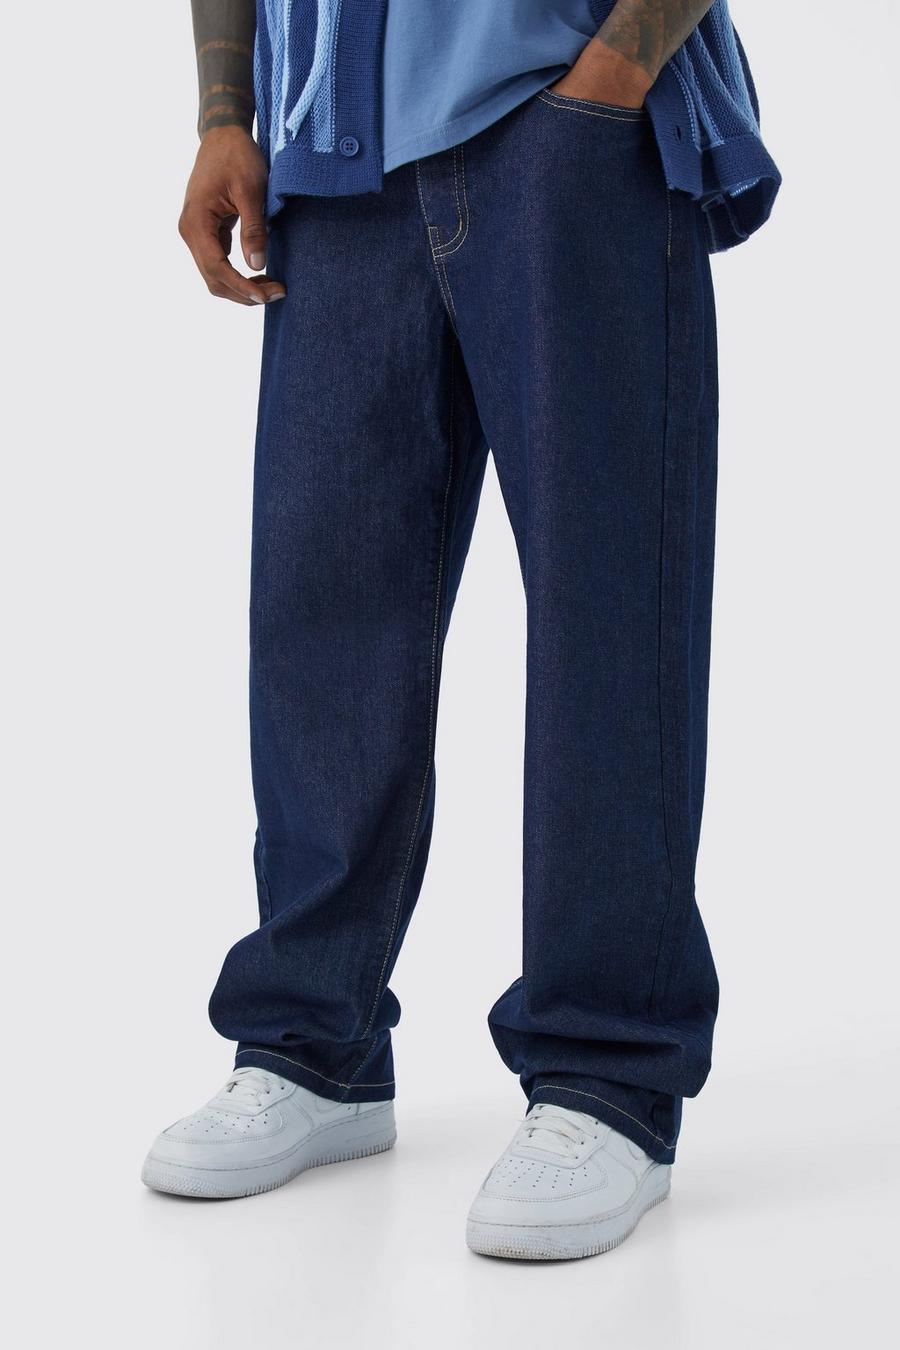 Indigo blue Baggy jeans i rigid denim